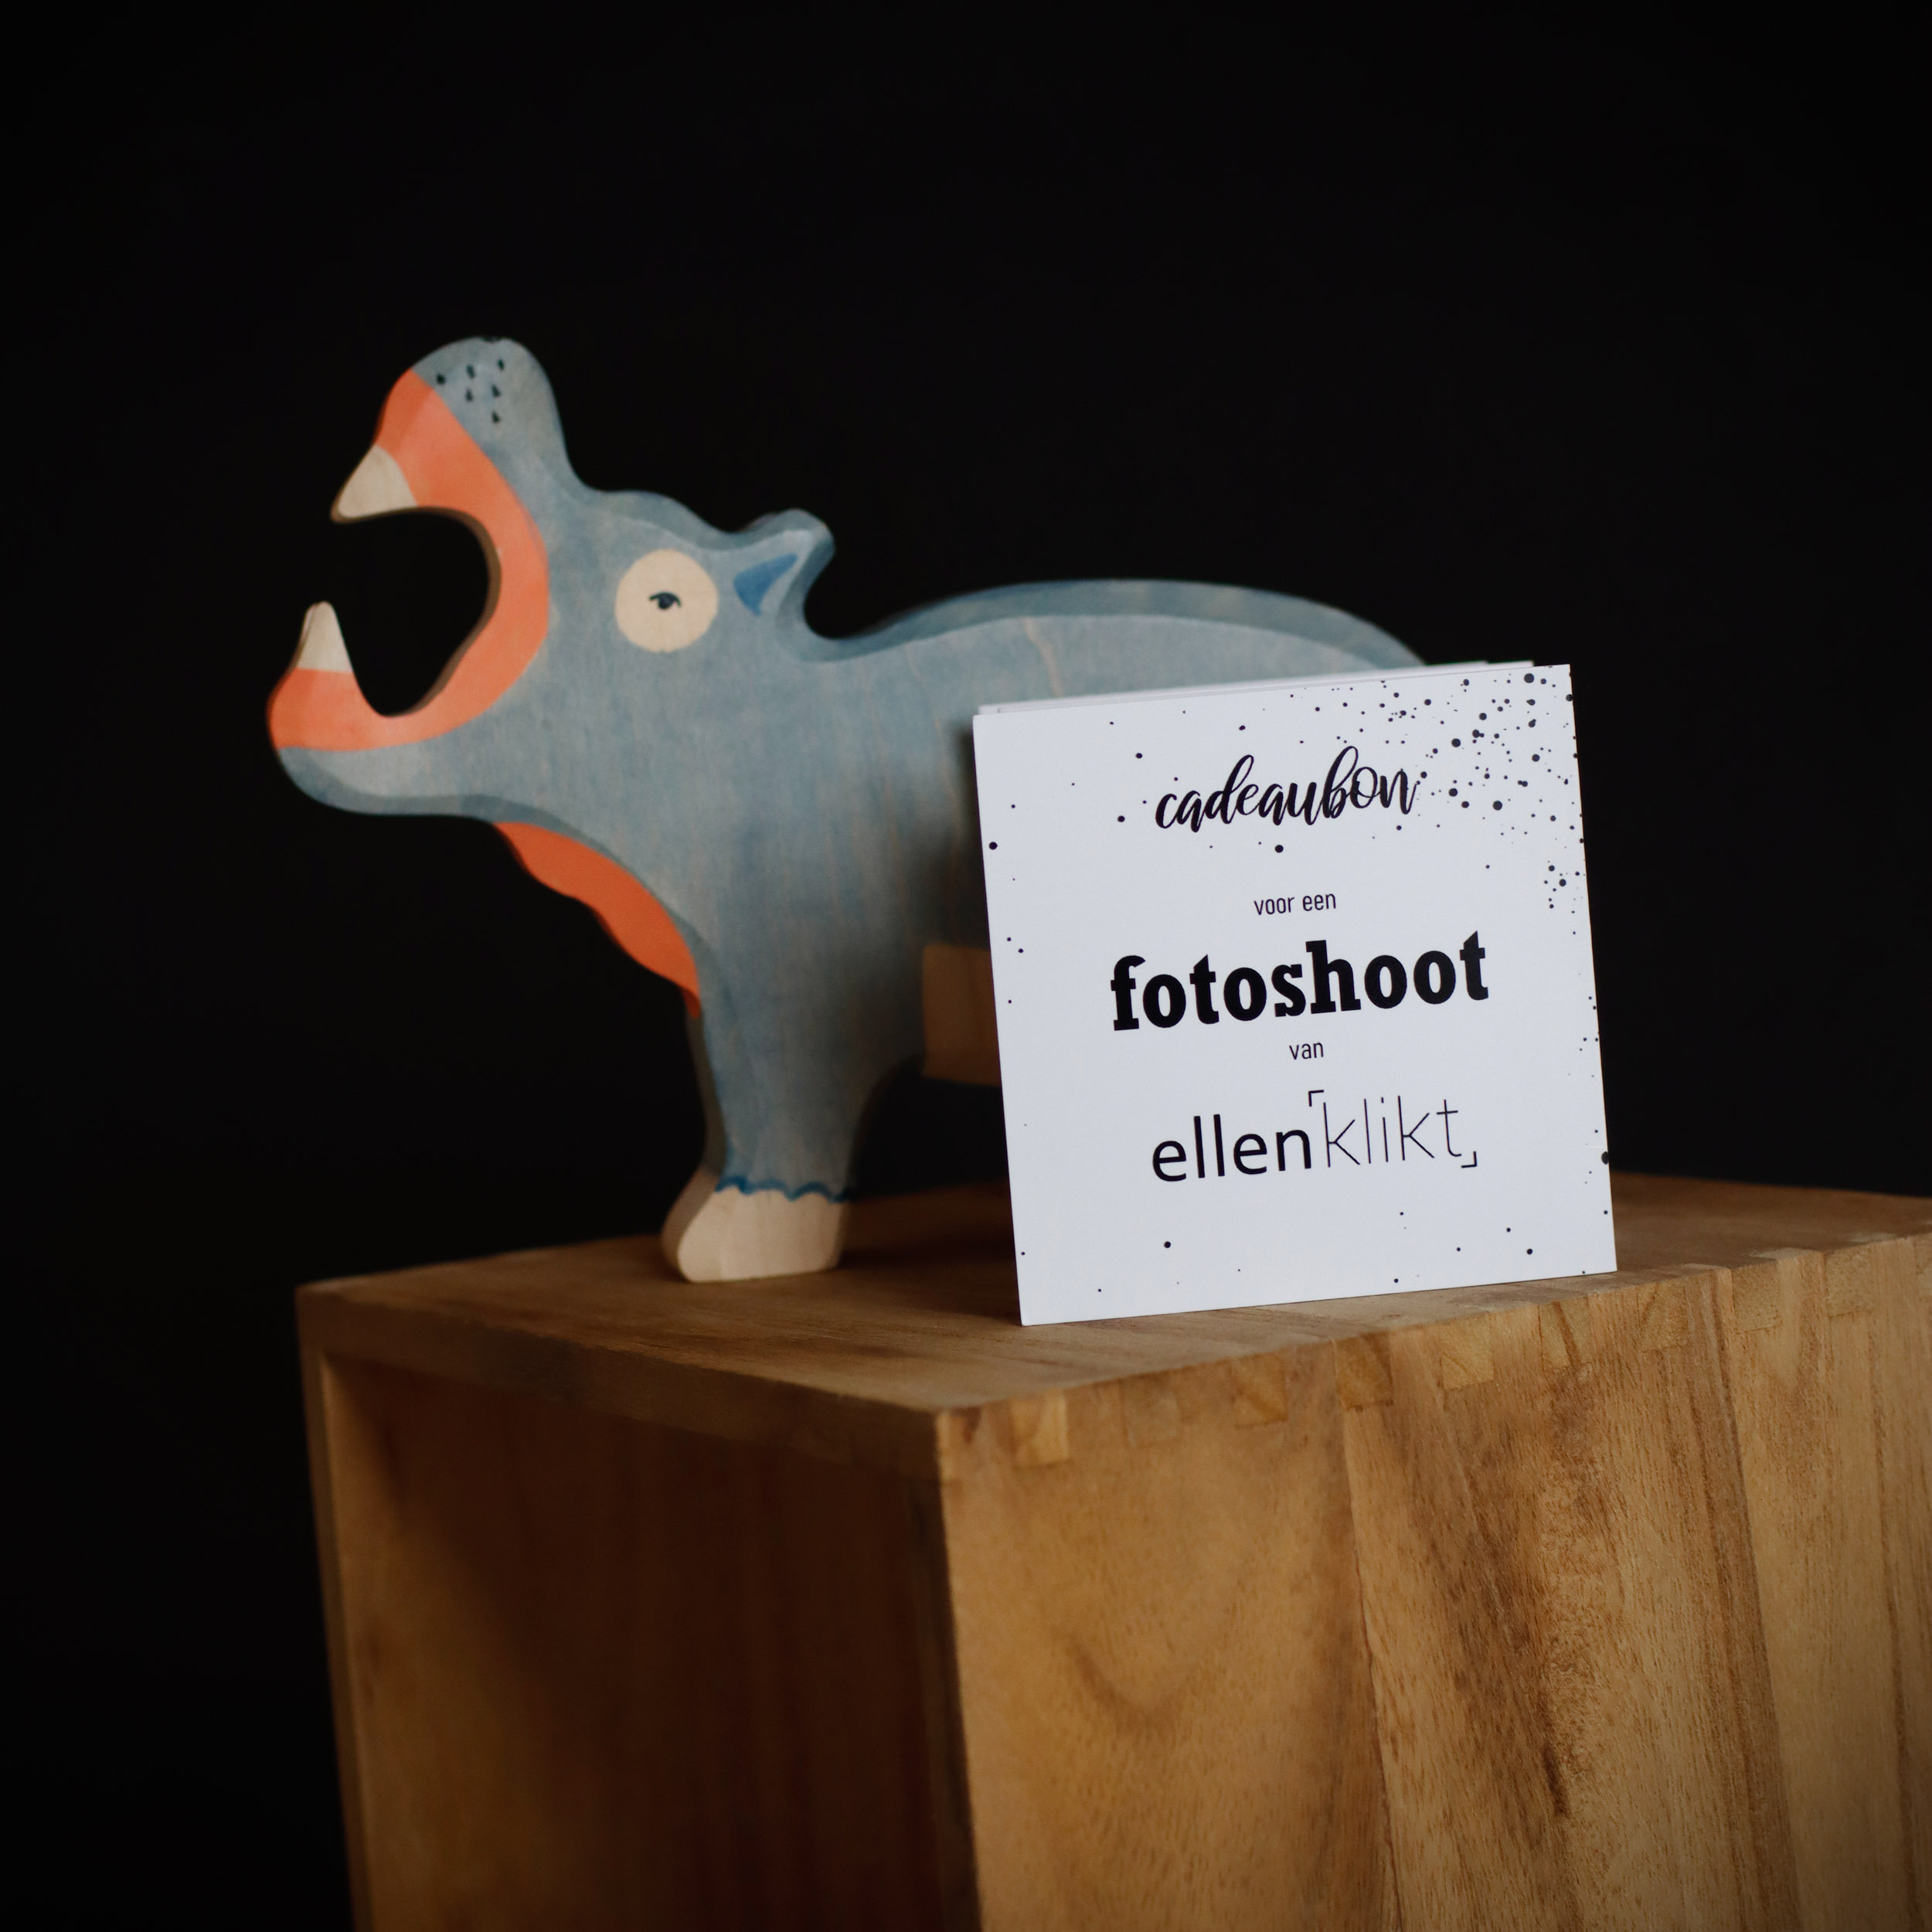 Deze foto toont een cadeaubon voor een fotoshoot van ellenklikt, gepresenteerd op een eenvoudig houten kastje, met keen houten nijlpaard ernaast.